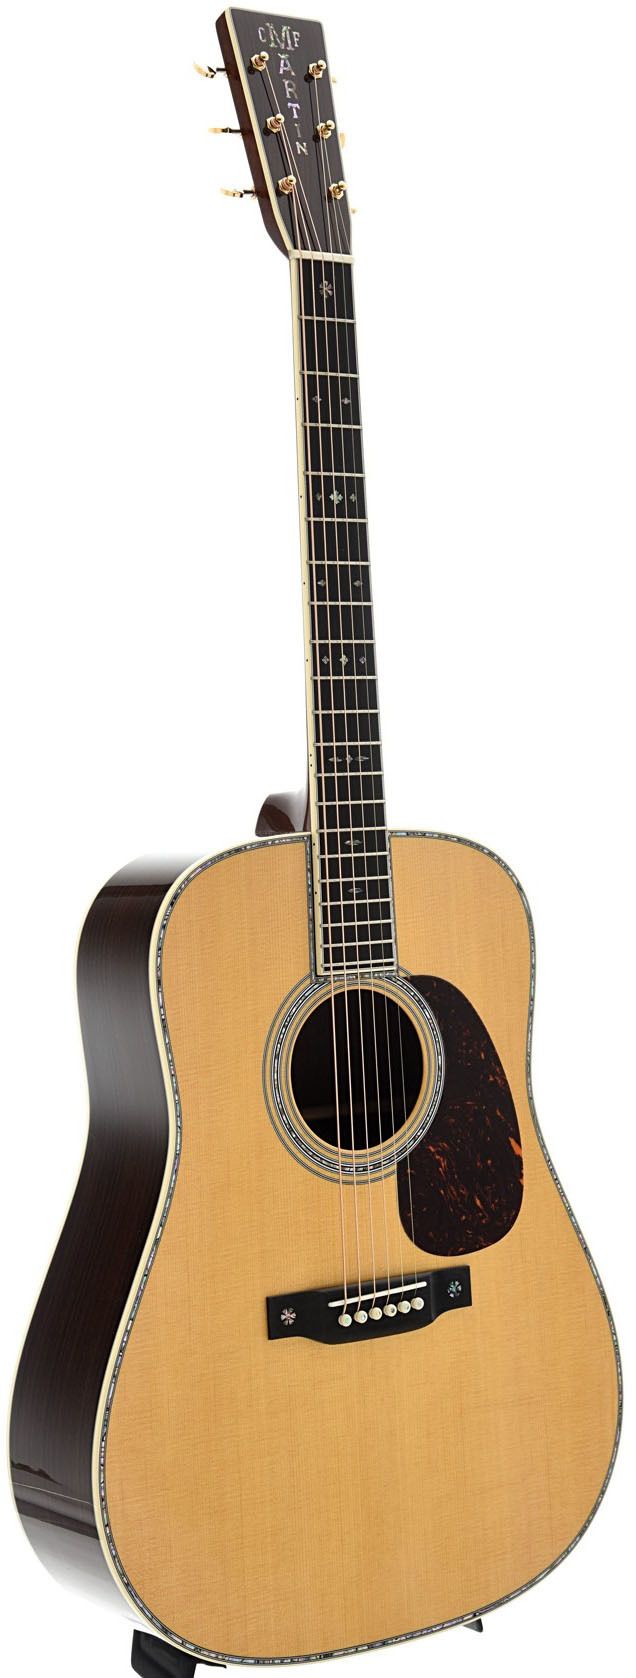 Martin D-42 Standard Acoustic Guitar | Music Depot